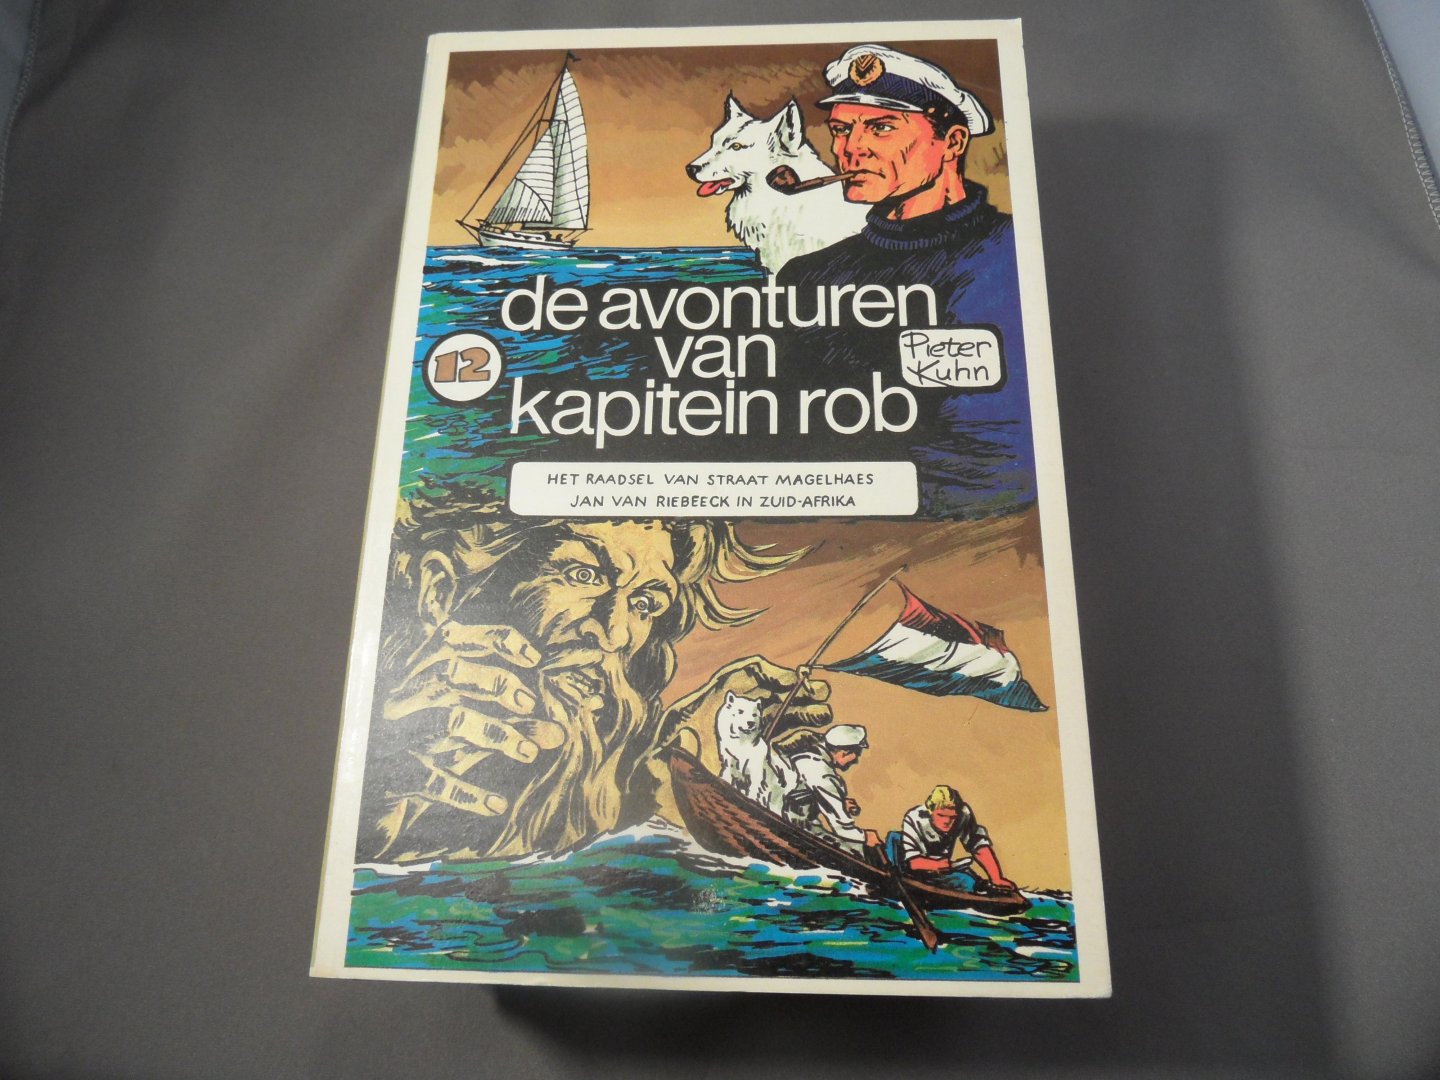 Kuhn, Peter - De avonturen van kapitein Rob, deel 12. Het raadsel van staat Magelhaes / Jan van Riebeeck in Zuid-Afrika